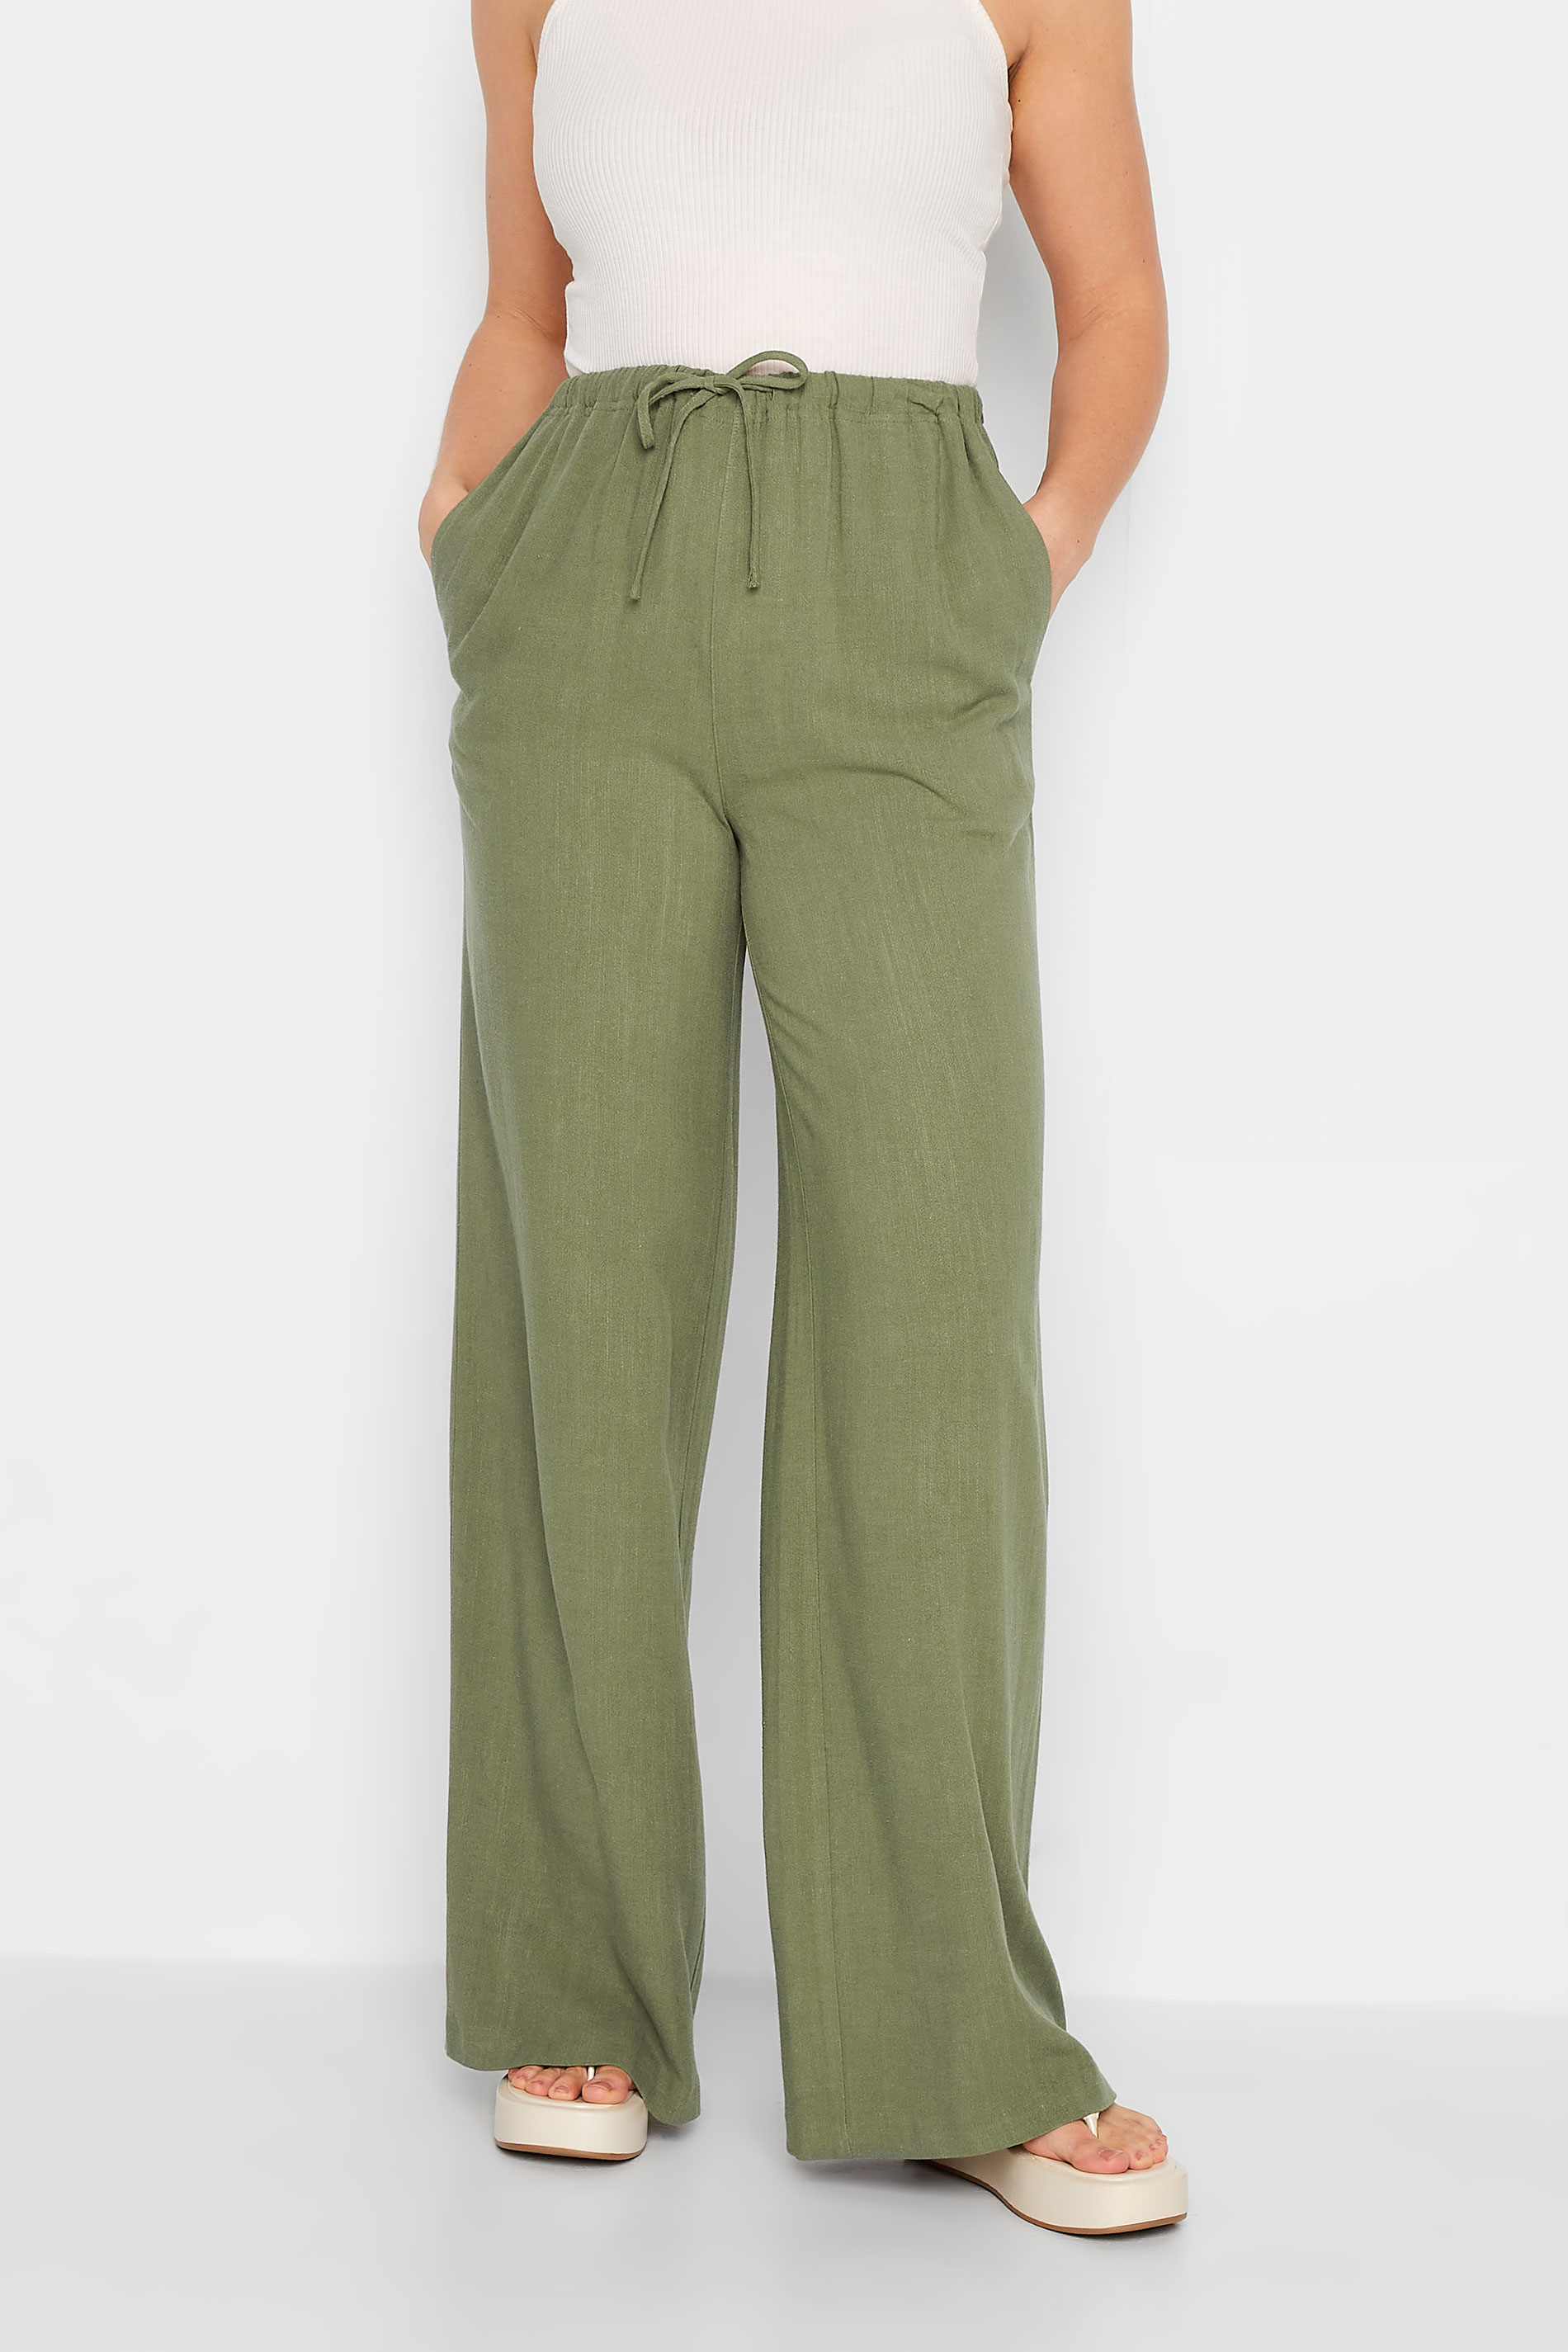 LTS Tall Women's Khaki Green Wide Leg Linen Look Trousers | Long Tall Sally 1